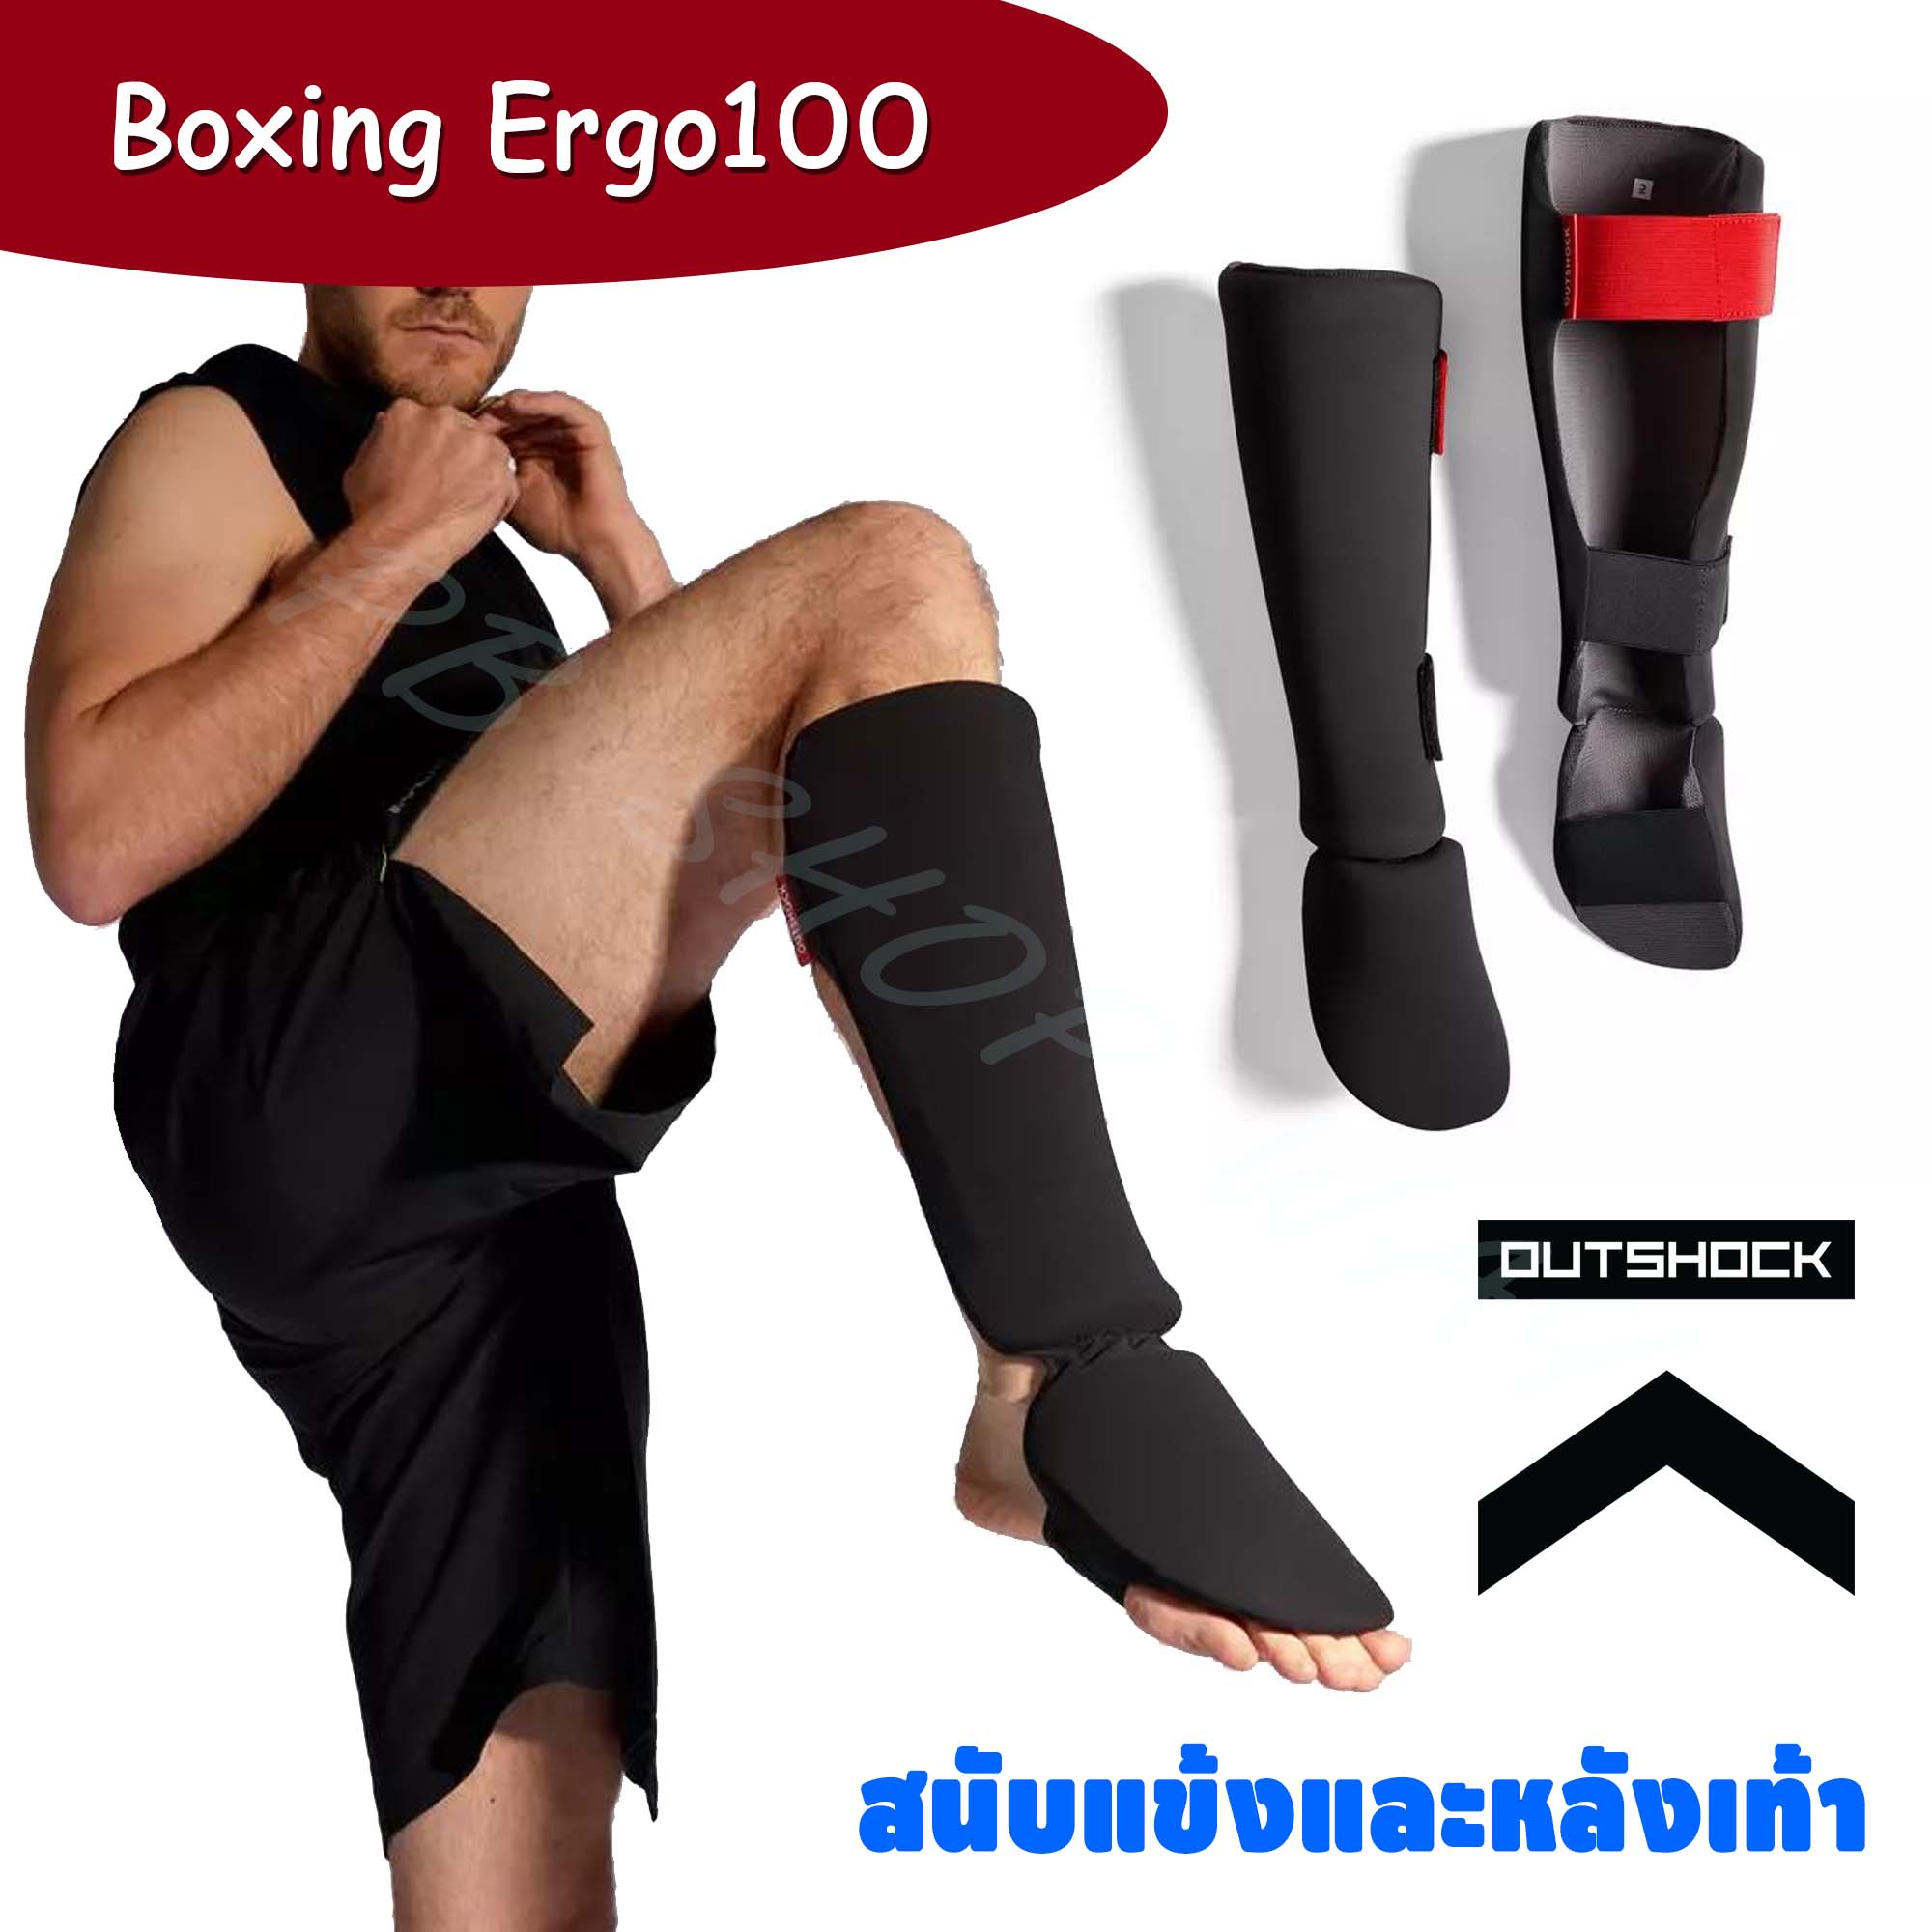 สนับแข้ง สนับขา และหลังเท้า สำหรับผู้หัดเล่นคิกบ็อกซิ่ง มวยไทย รุ่น 100 Ergo